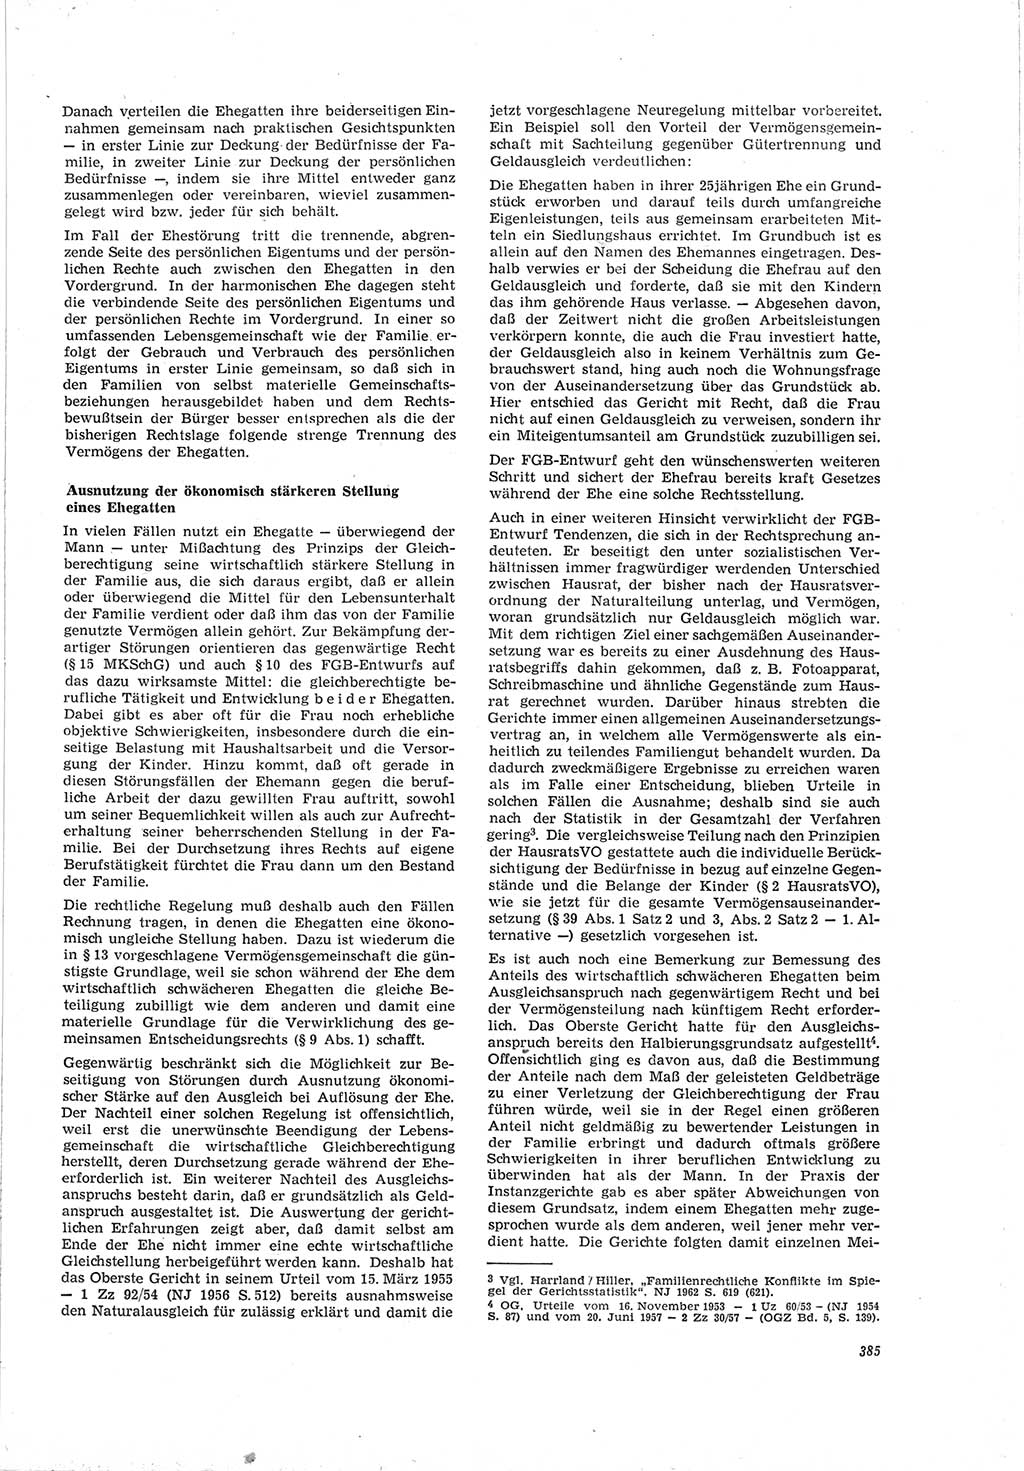 Neue Justiz (NJ), Zeitschrift für Recht und Rechtswissenschaft [Deutsche Demokratische Republik (DDR)], 19. Jahrgang 1965, Seite 385 (NJ DDR 1965, S. 385)